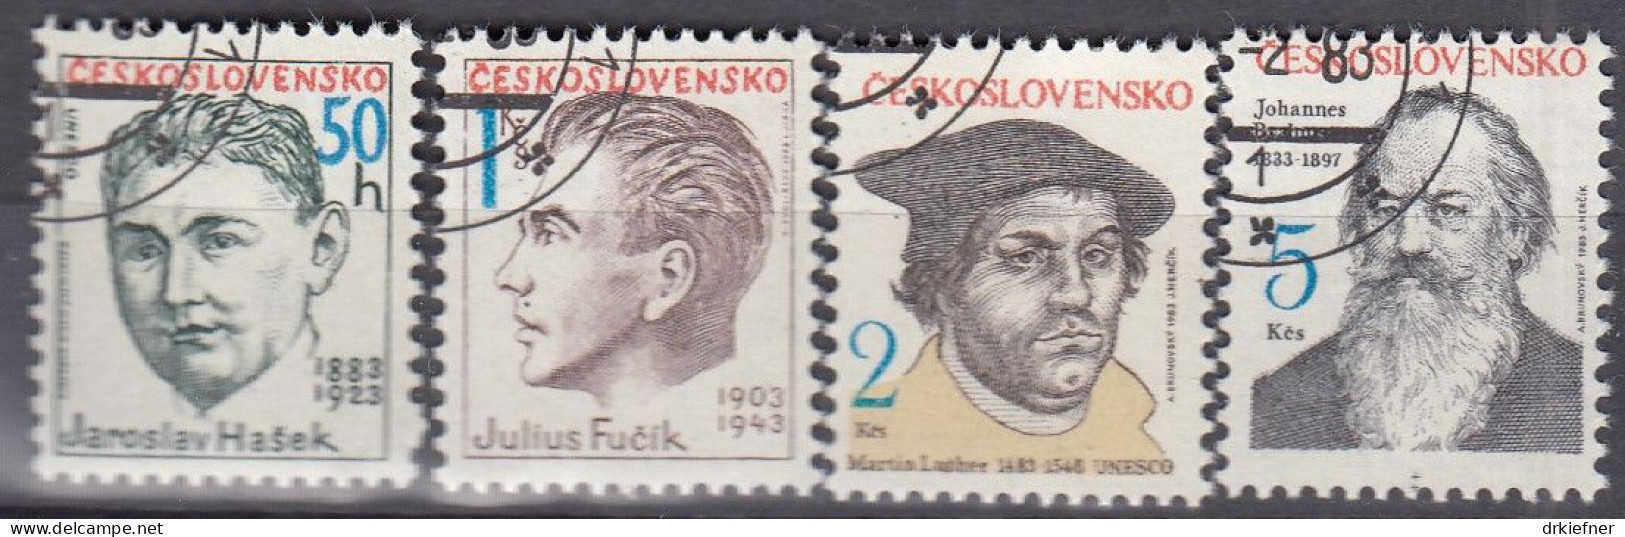 TSCHECHOSLOWAKEI  2699-2702, Gestempelt, Persönlichkeiten, Martin Luther, Johannes Brahms U.a., 1983 - Gebruikt